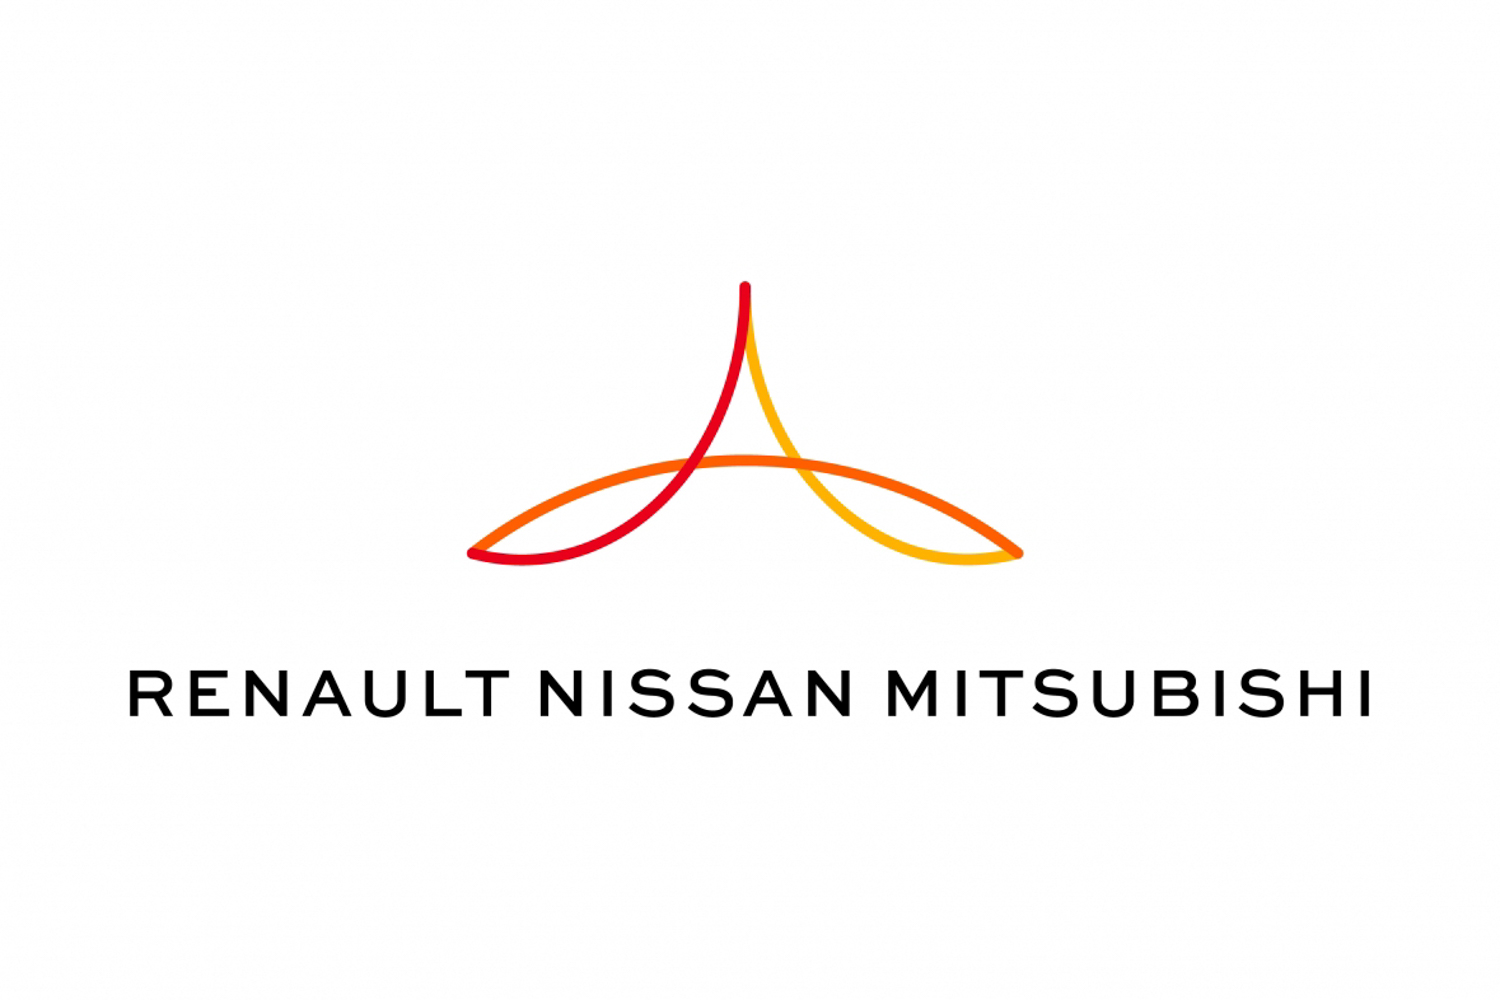 Renault-Nissan-Mitsubishi Alliance future roadmap